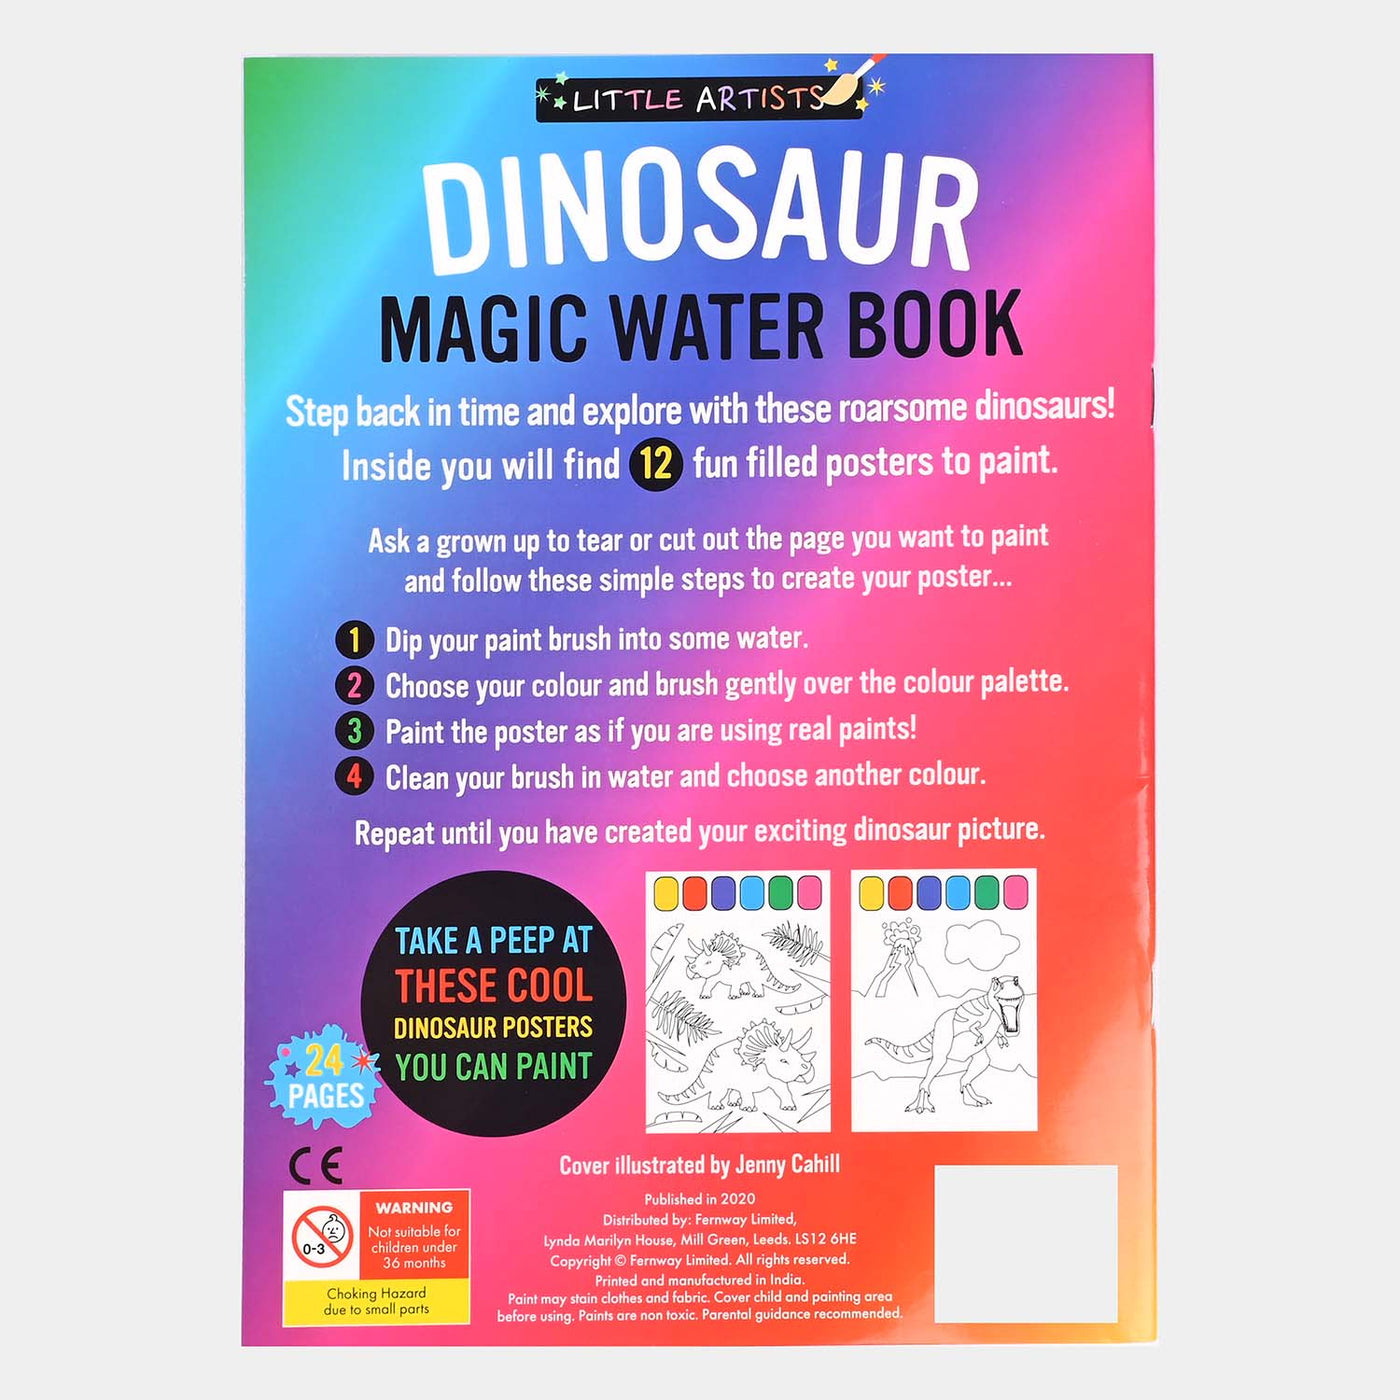 Little Artists: Dinosaur Magic Water Book